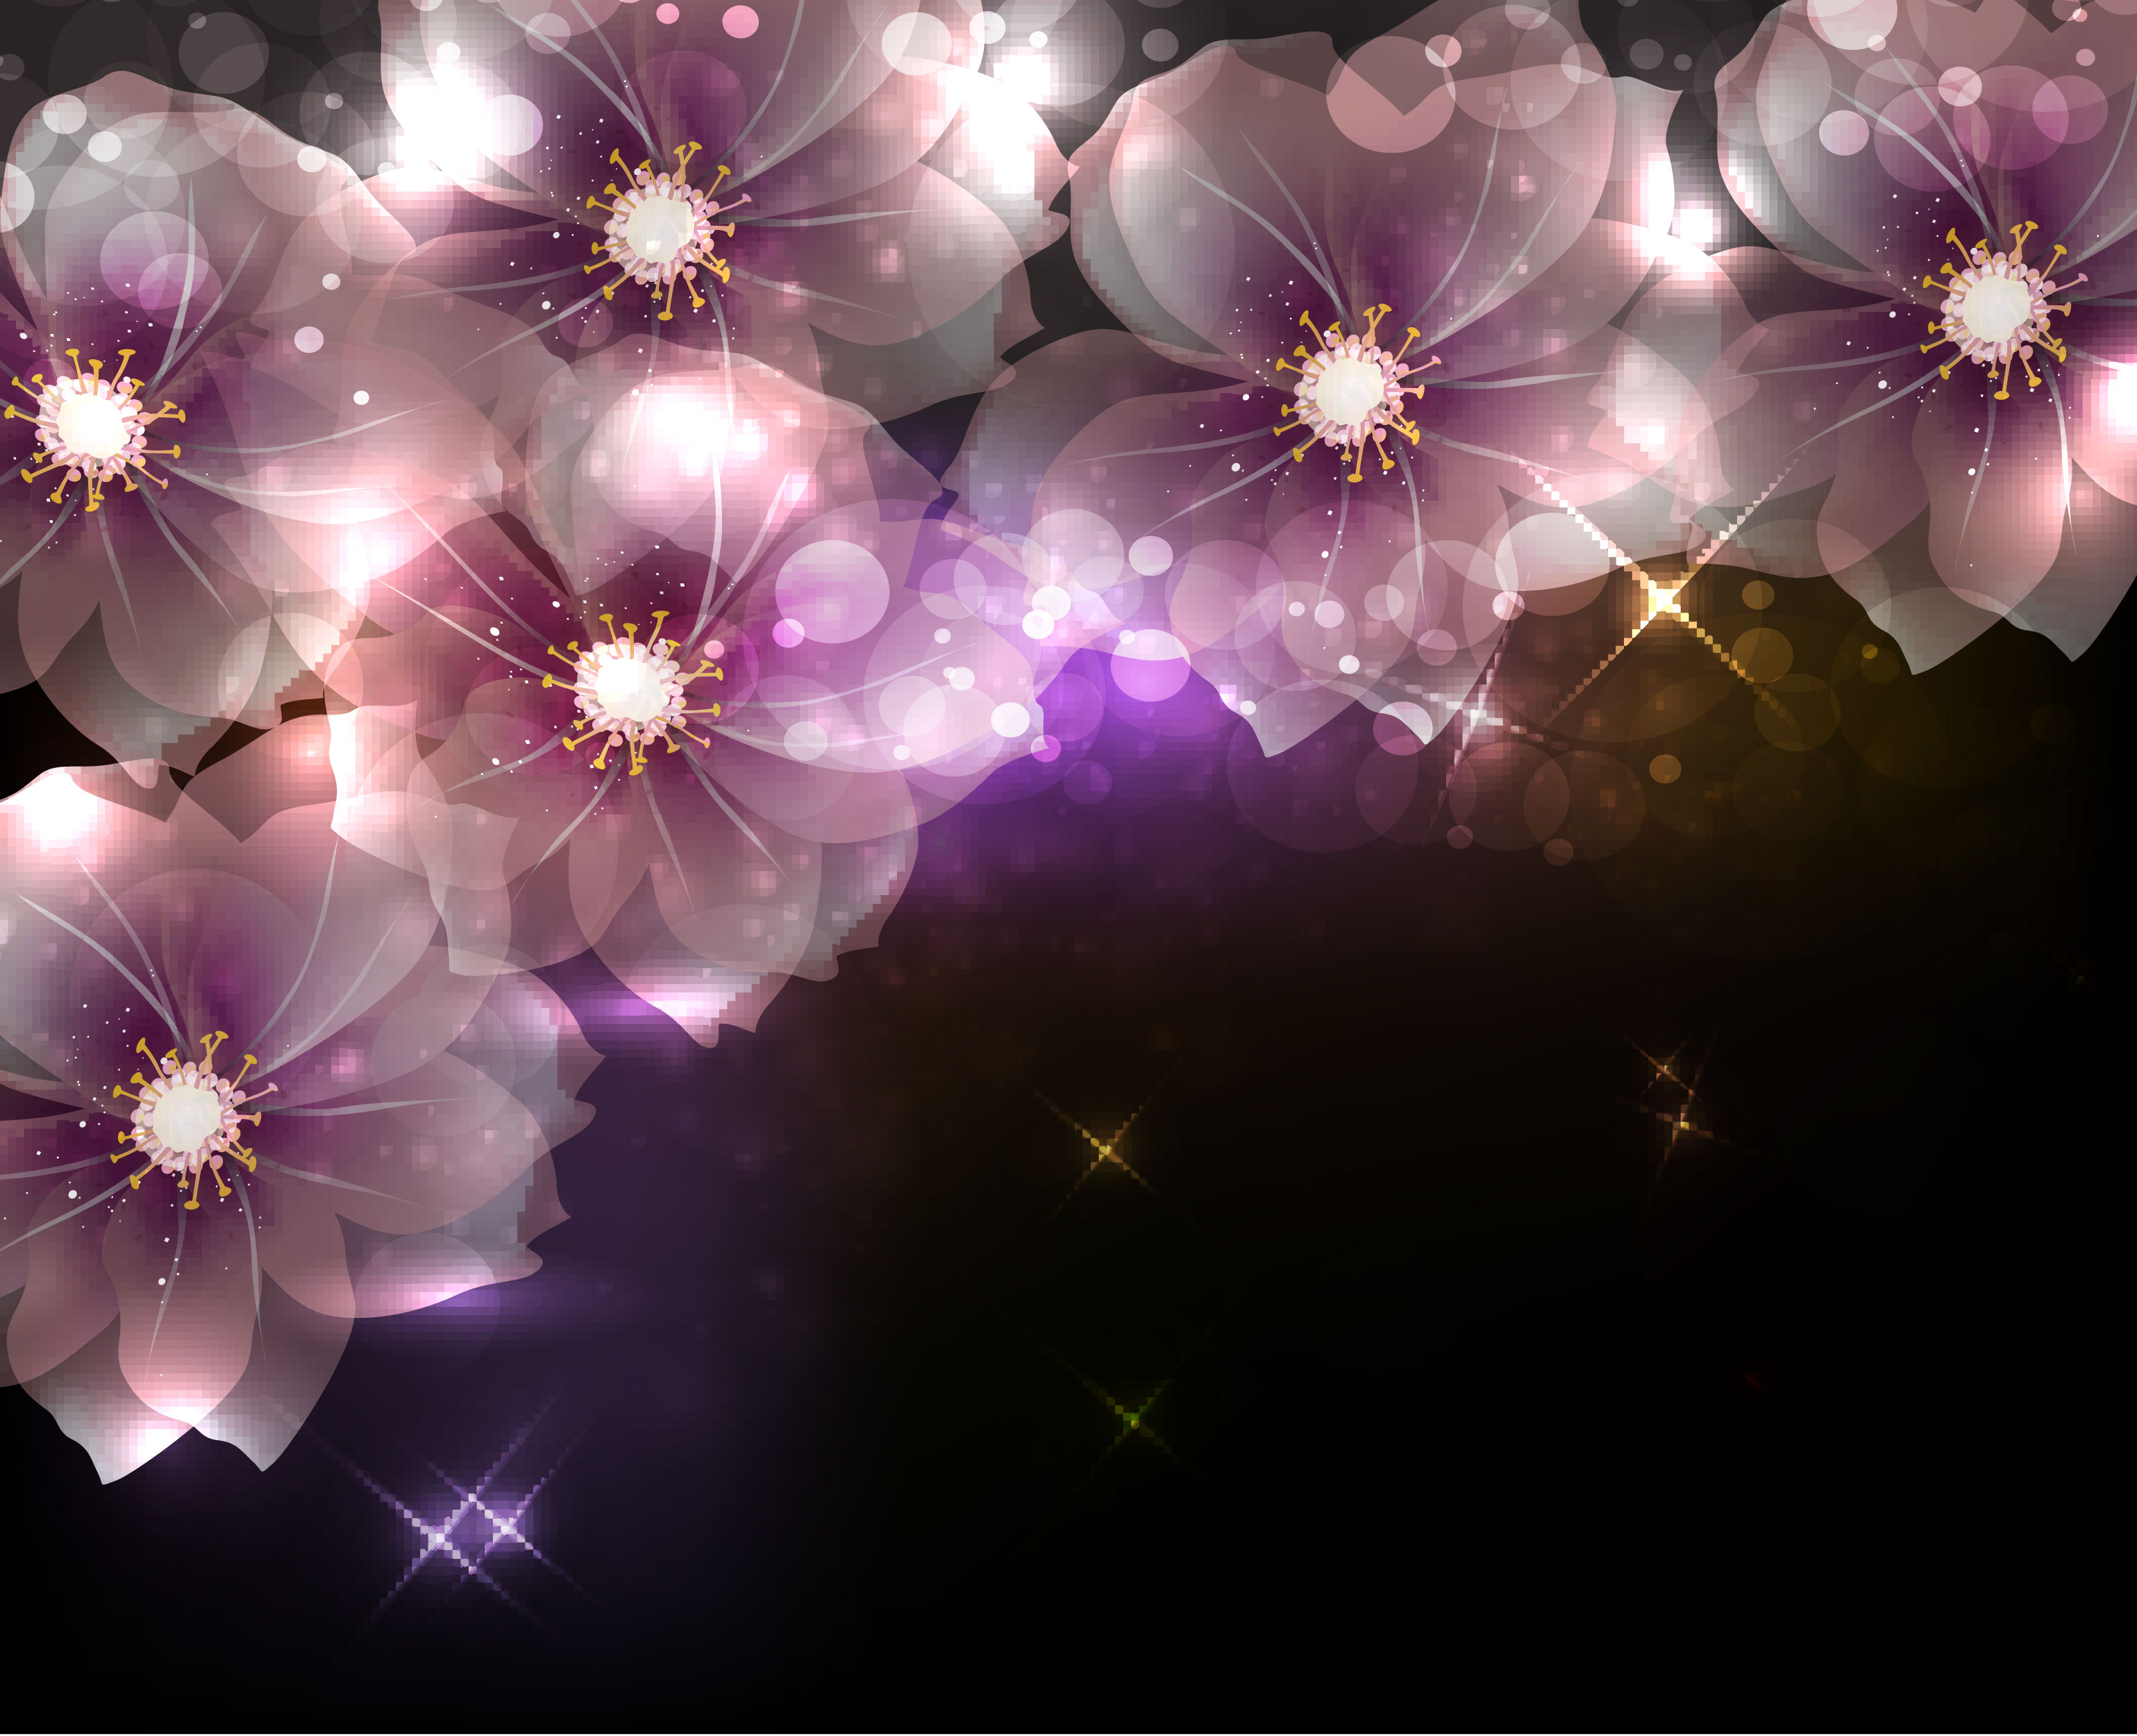 桜 さくら の画像 イラスト フリー素材 No 049 桜壁紙 ネオン色 紫 夜